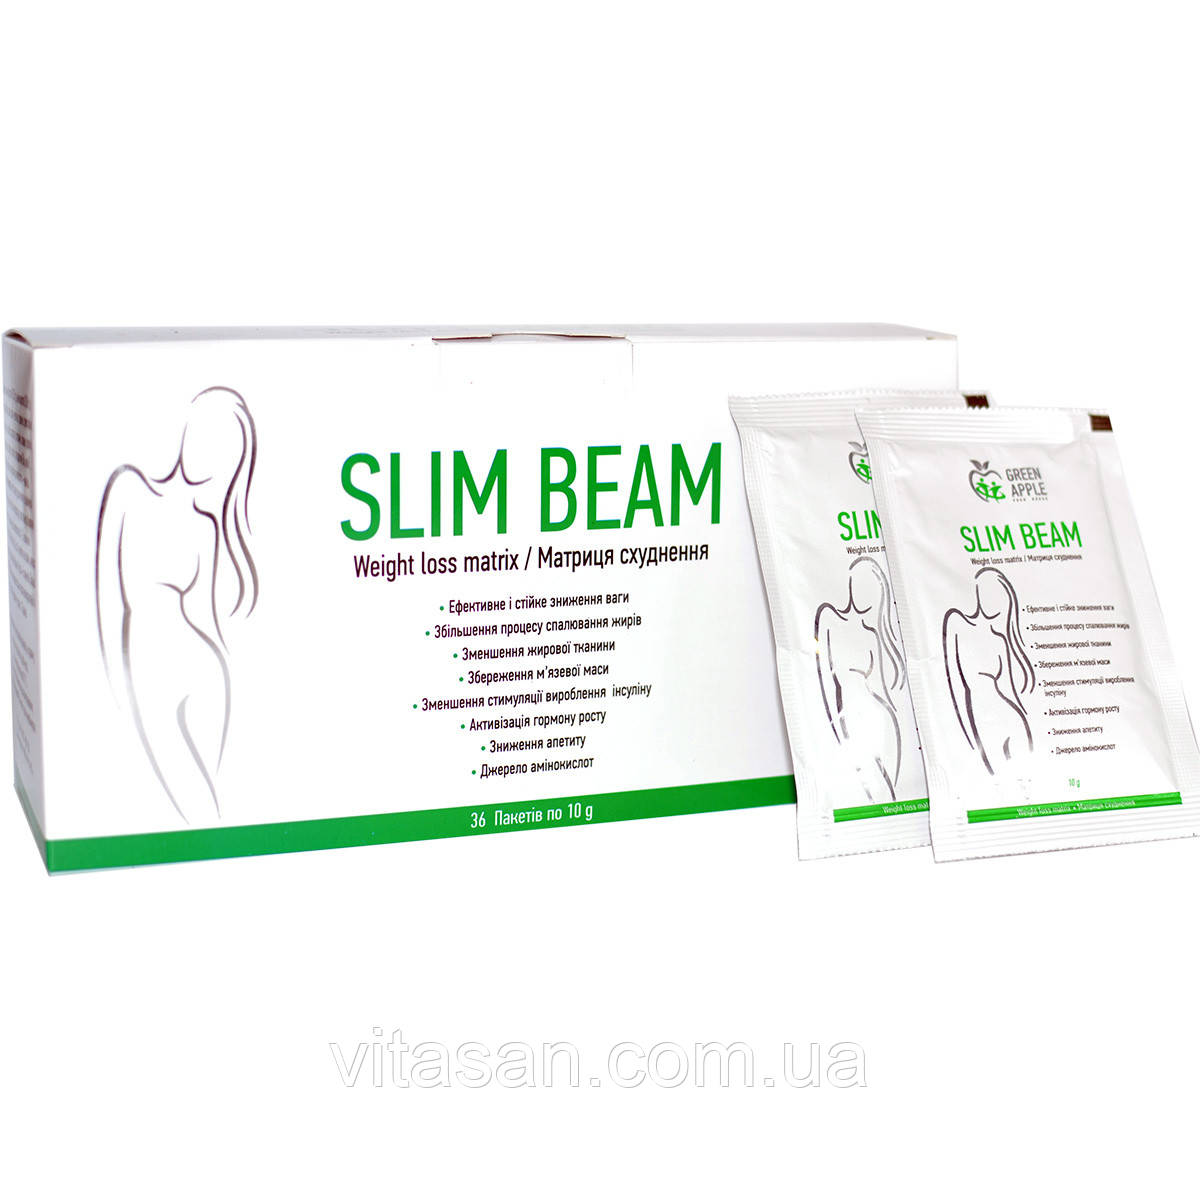 Протеїновий коктейль SLIM BEAM Матриця схуднення, 36 пакетів